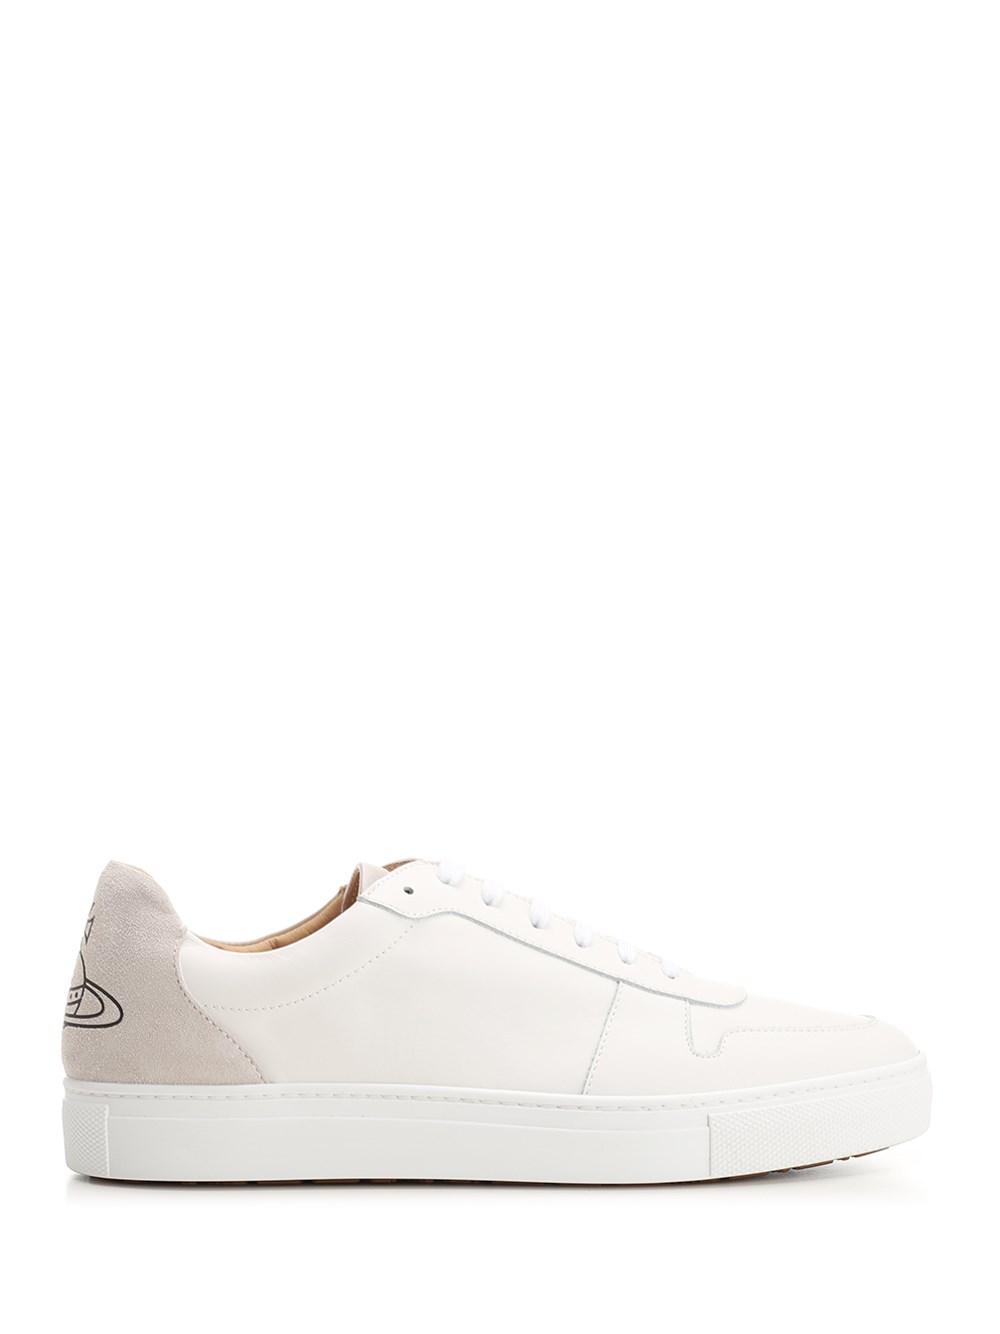 Vivienne Westwood White Low Top Sneakers | Lyst